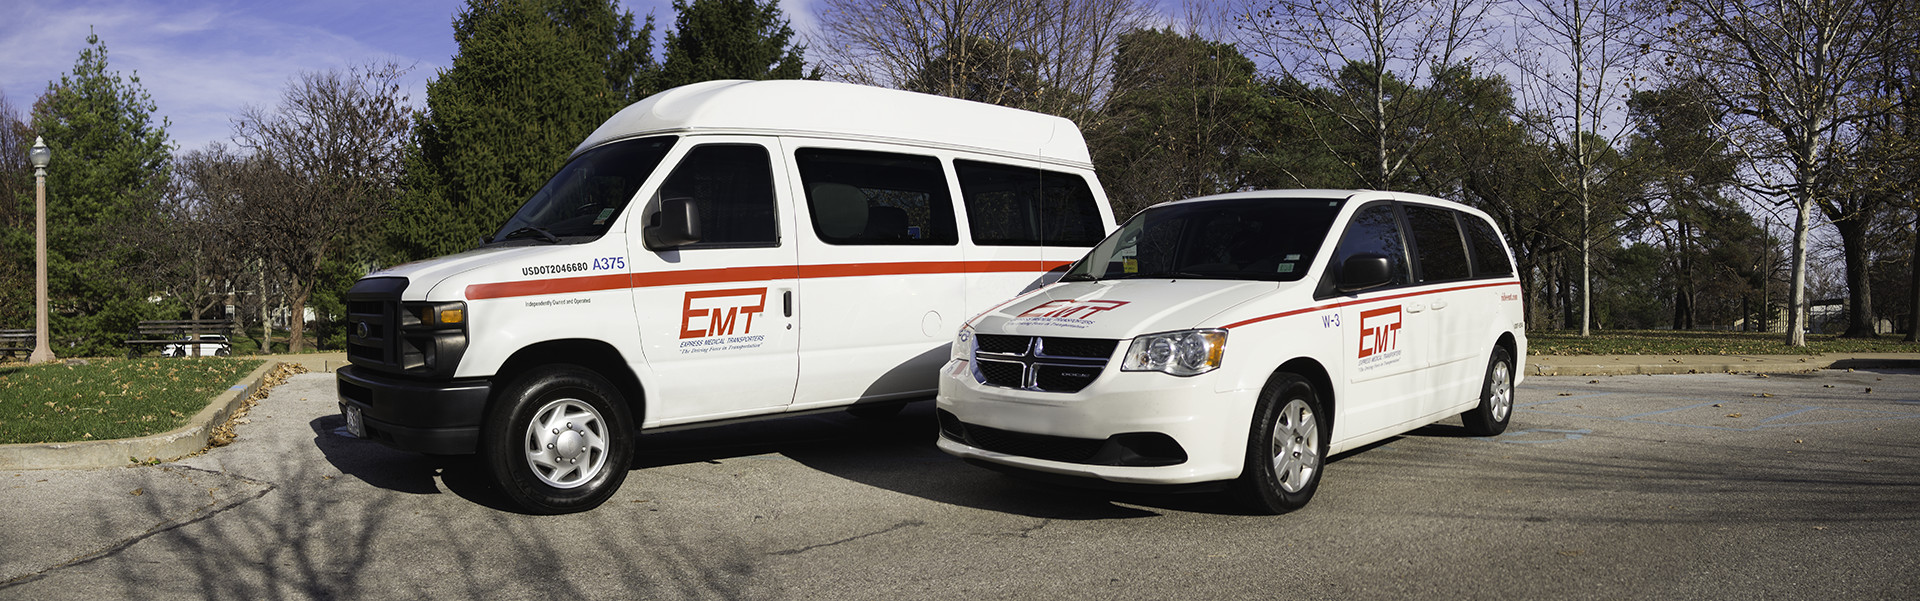 EMT-vehicles